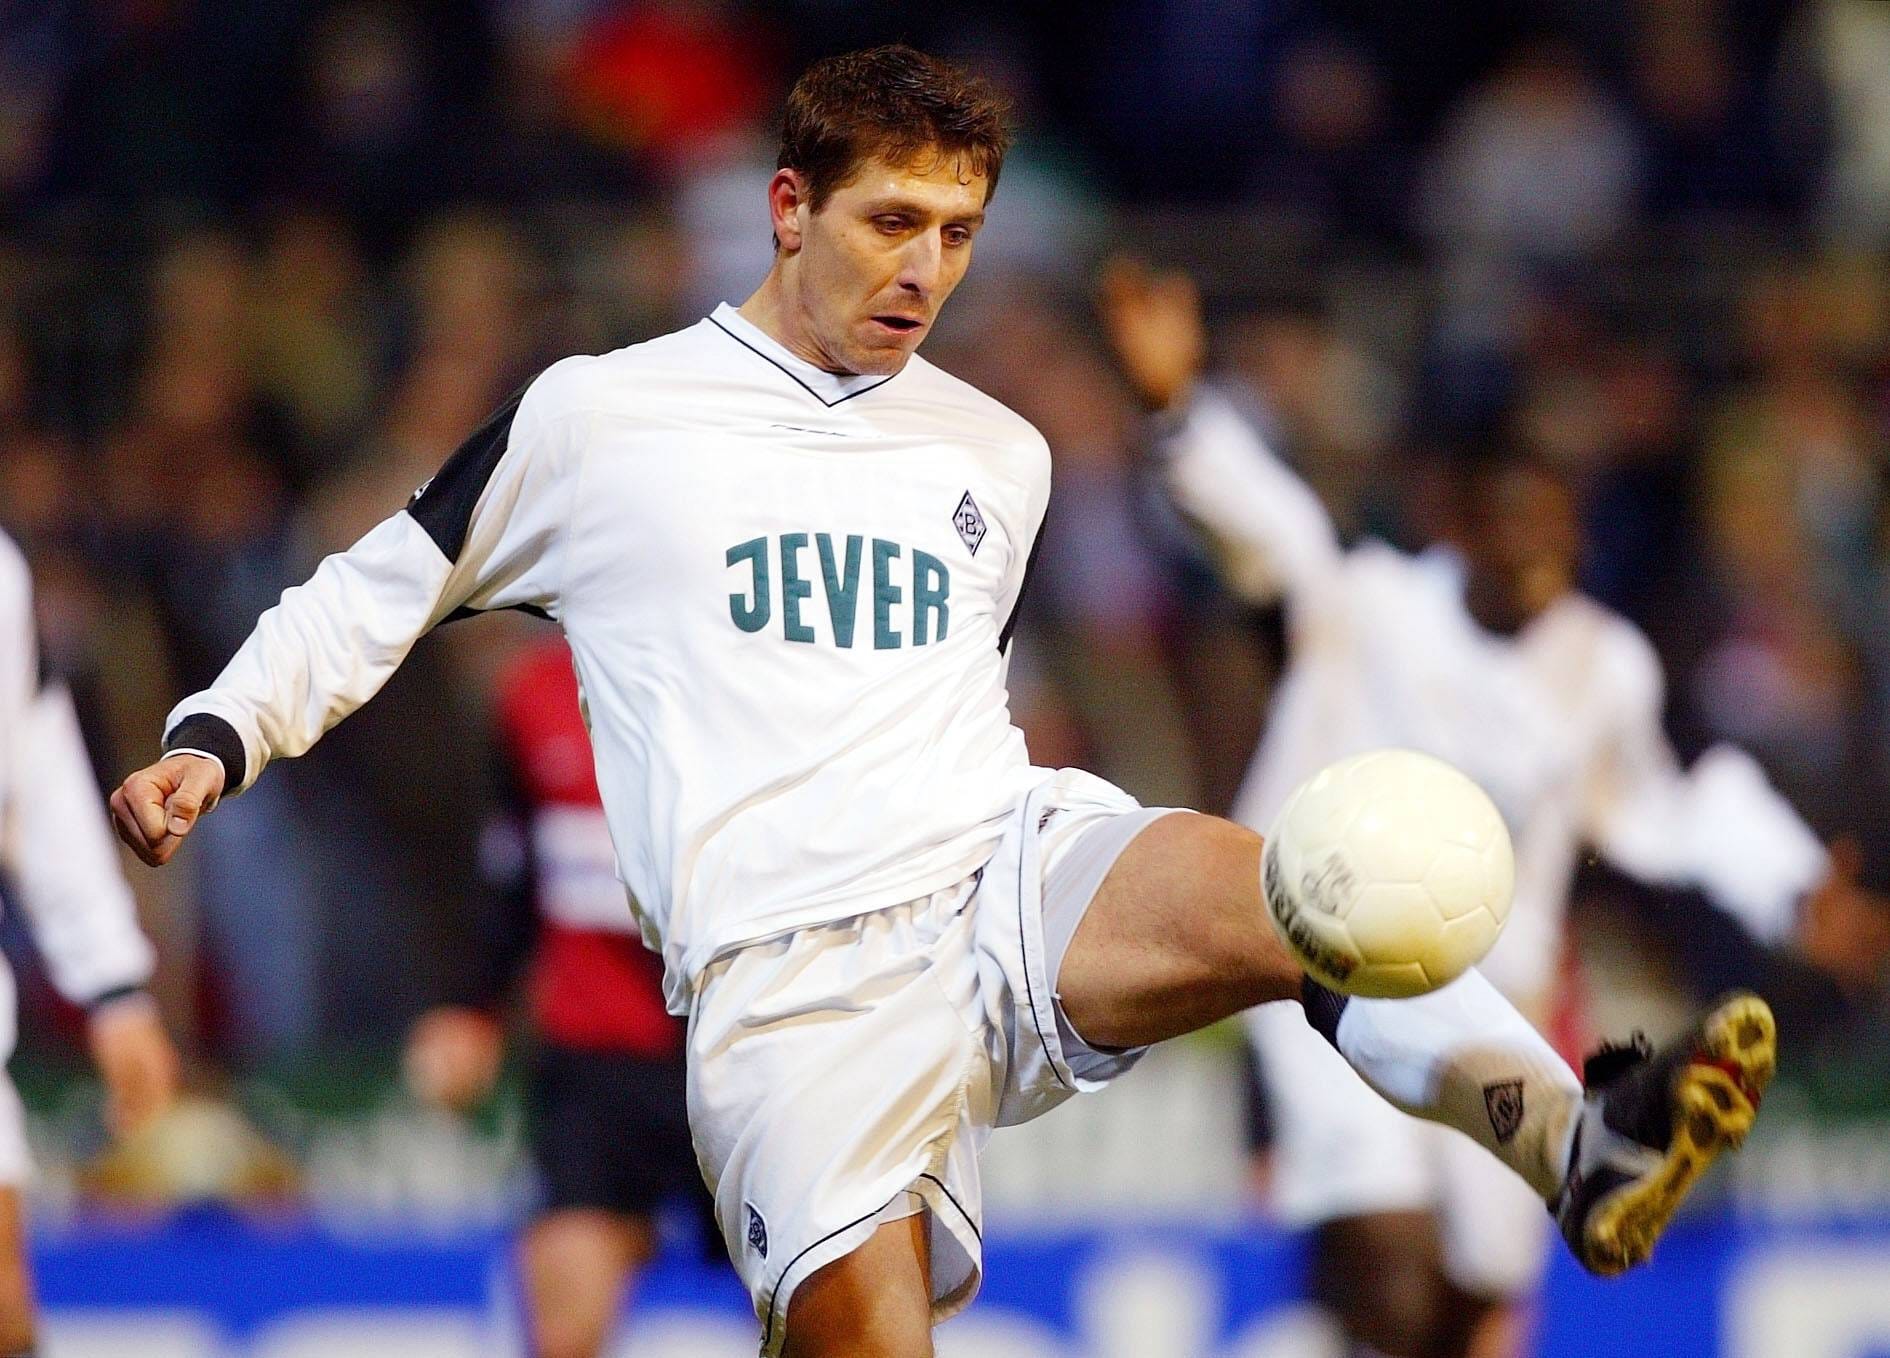 Igor Demo (2000–2005): Der Slowake kam in seiner Zeit am Niederrhein auf 28 Tore in 142 Spielen. Seit 2016 agiert er als Dolmetscher, unter anderem für László Bénes, der aber in der in der Rückrunde der Saison 2020/21 an den FC Augsburg verliehen wurde.